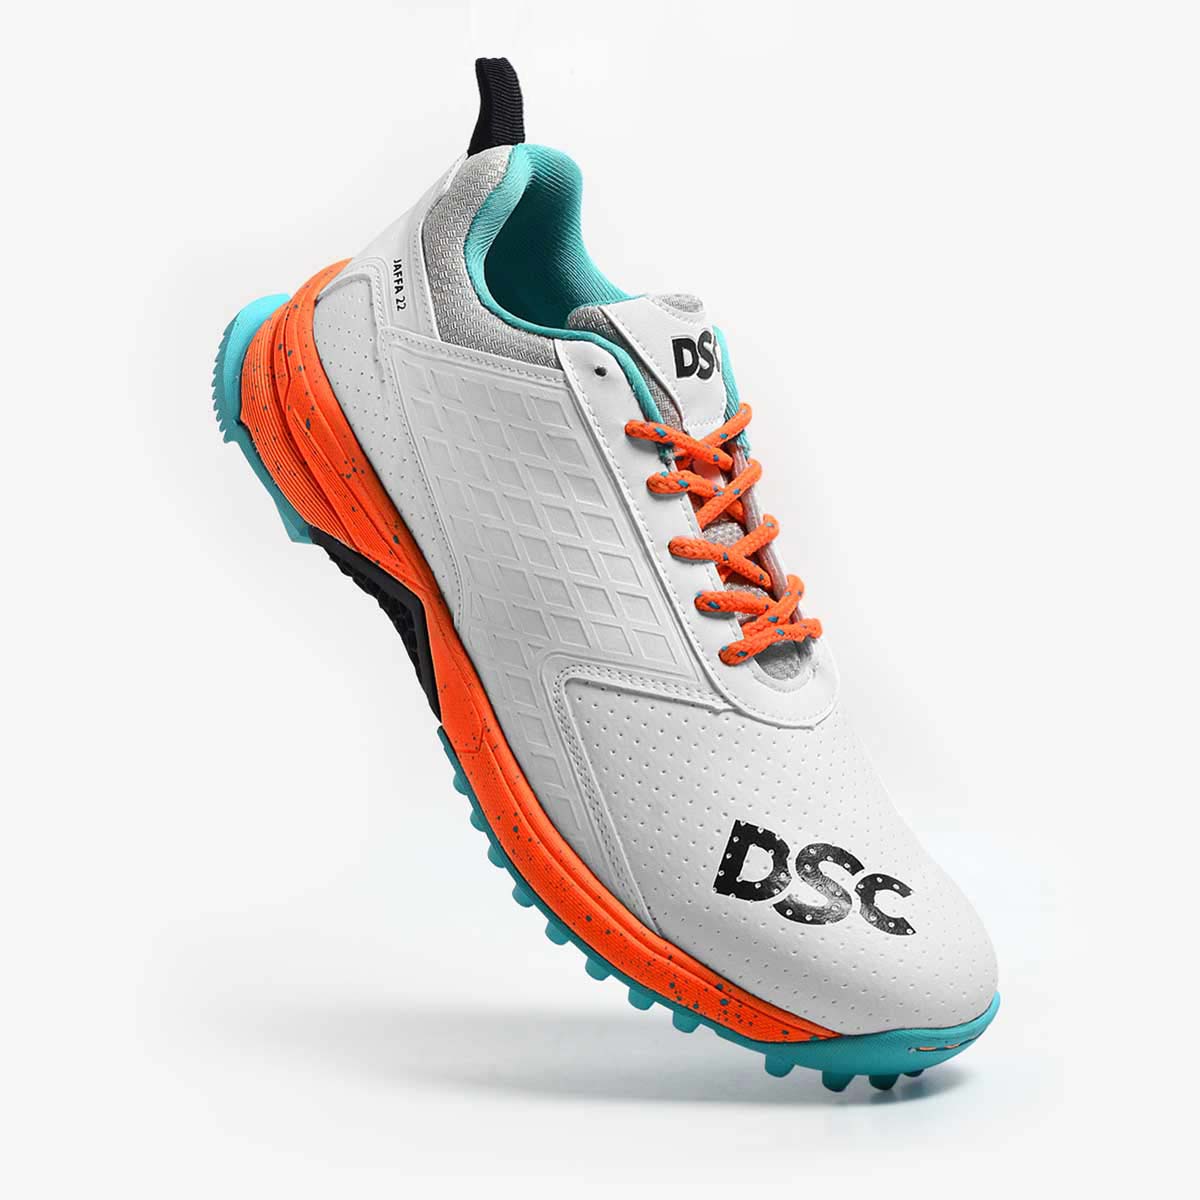 DSC Jaffa 22 Cricket Shoes – Orange